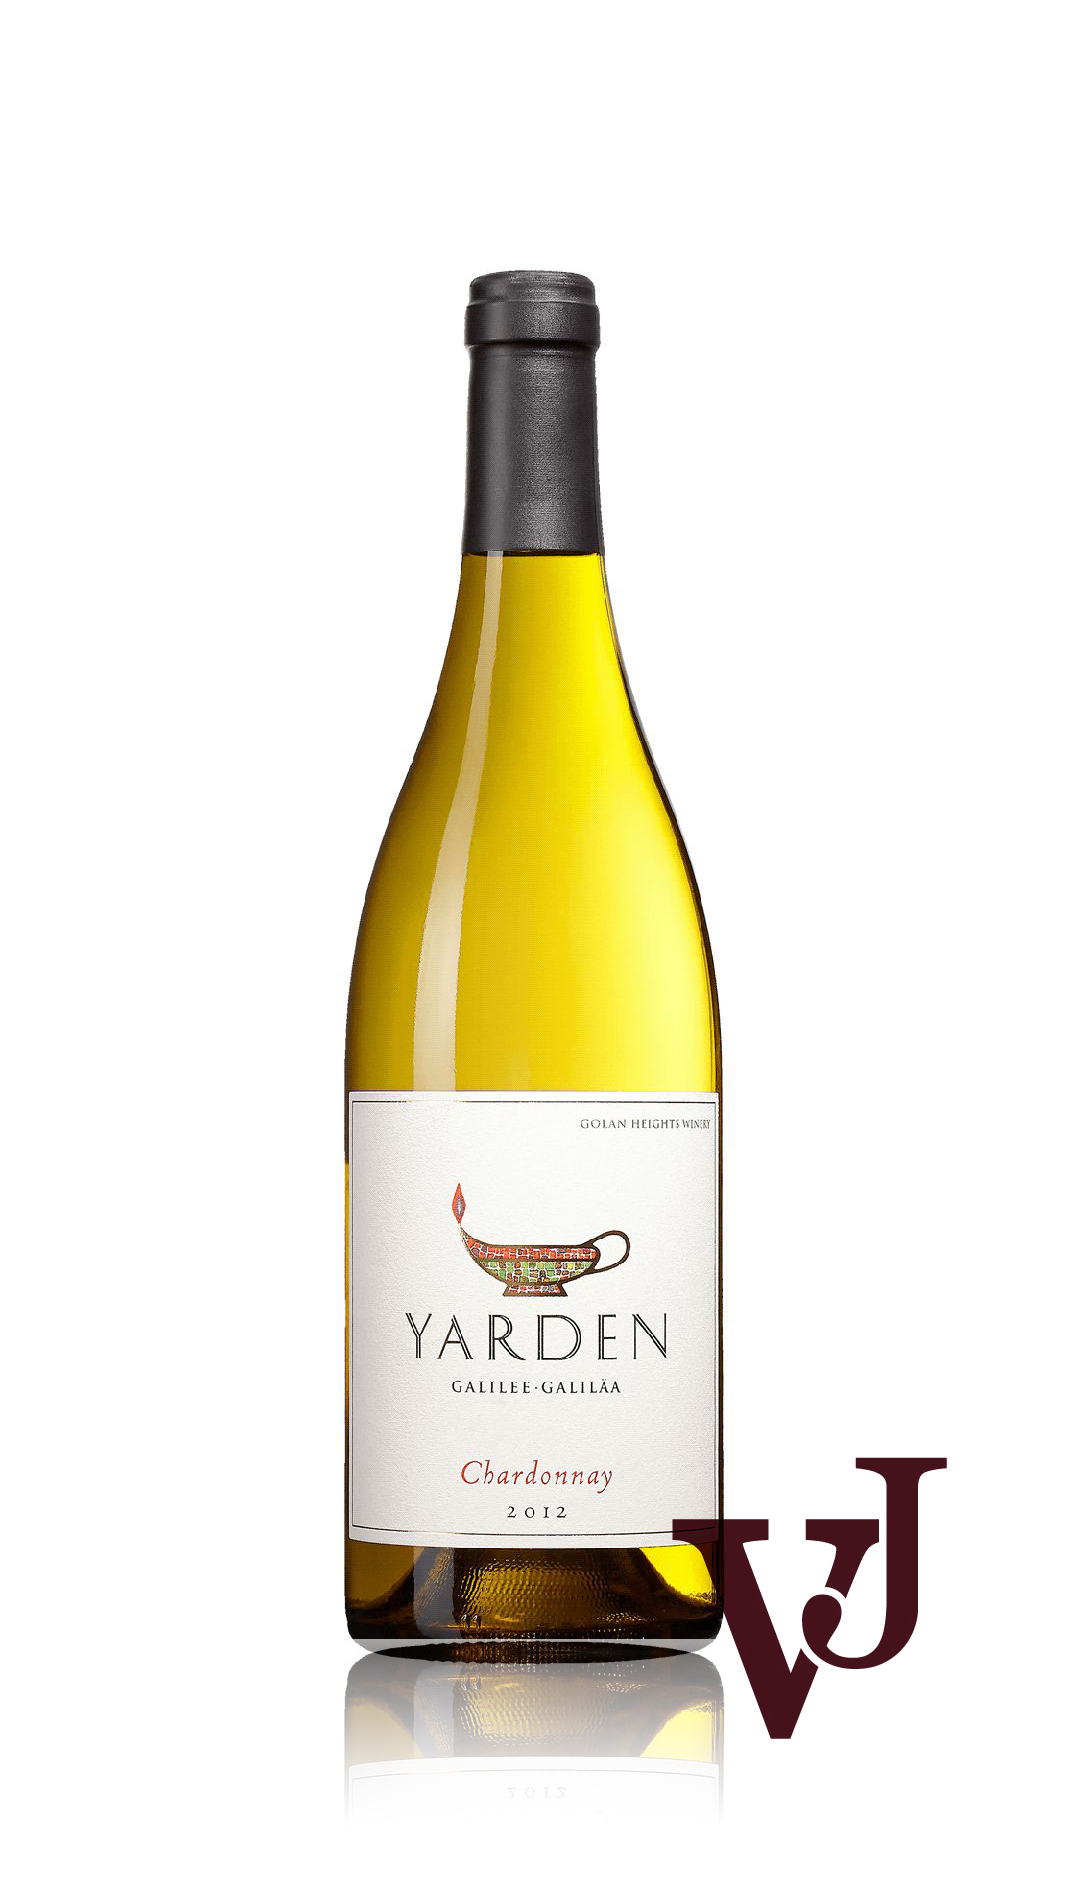 Vitt Vin - Yarden Chardonnay artikel nummer 251701 från producenten Golan Heights Winery från området Israel